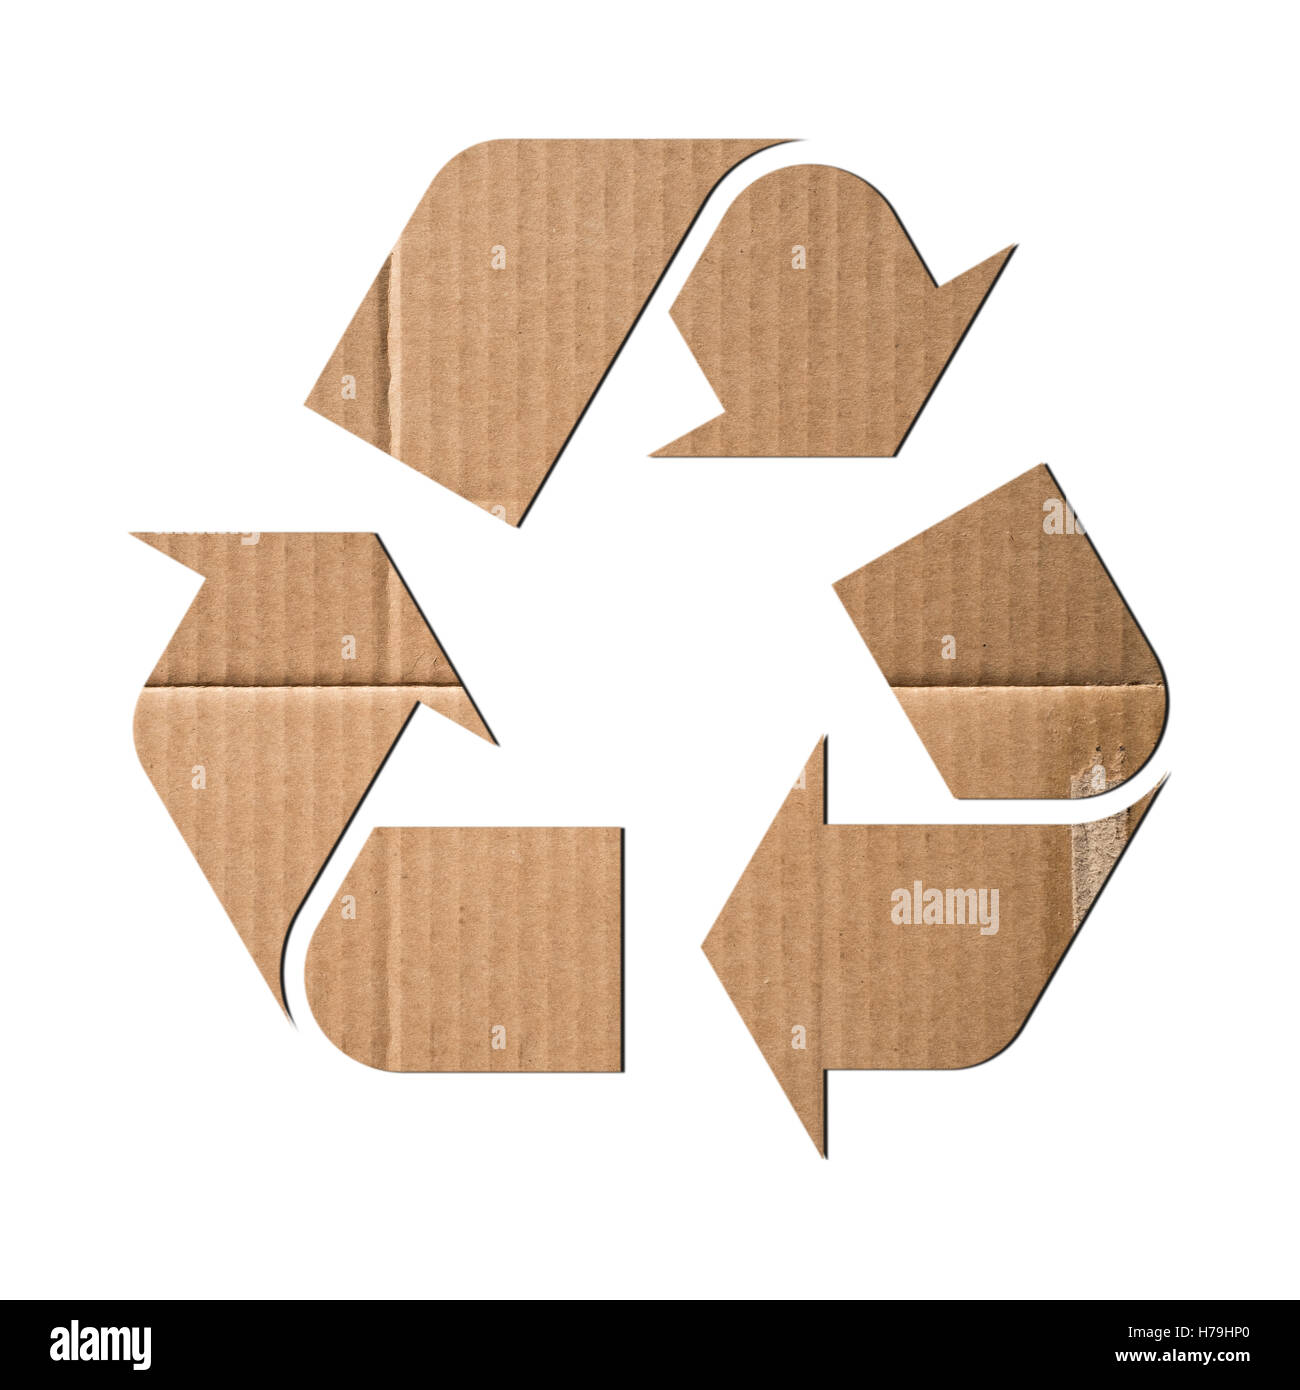 Simbolo di riciclaggio di cartone ondulato Foto Stock